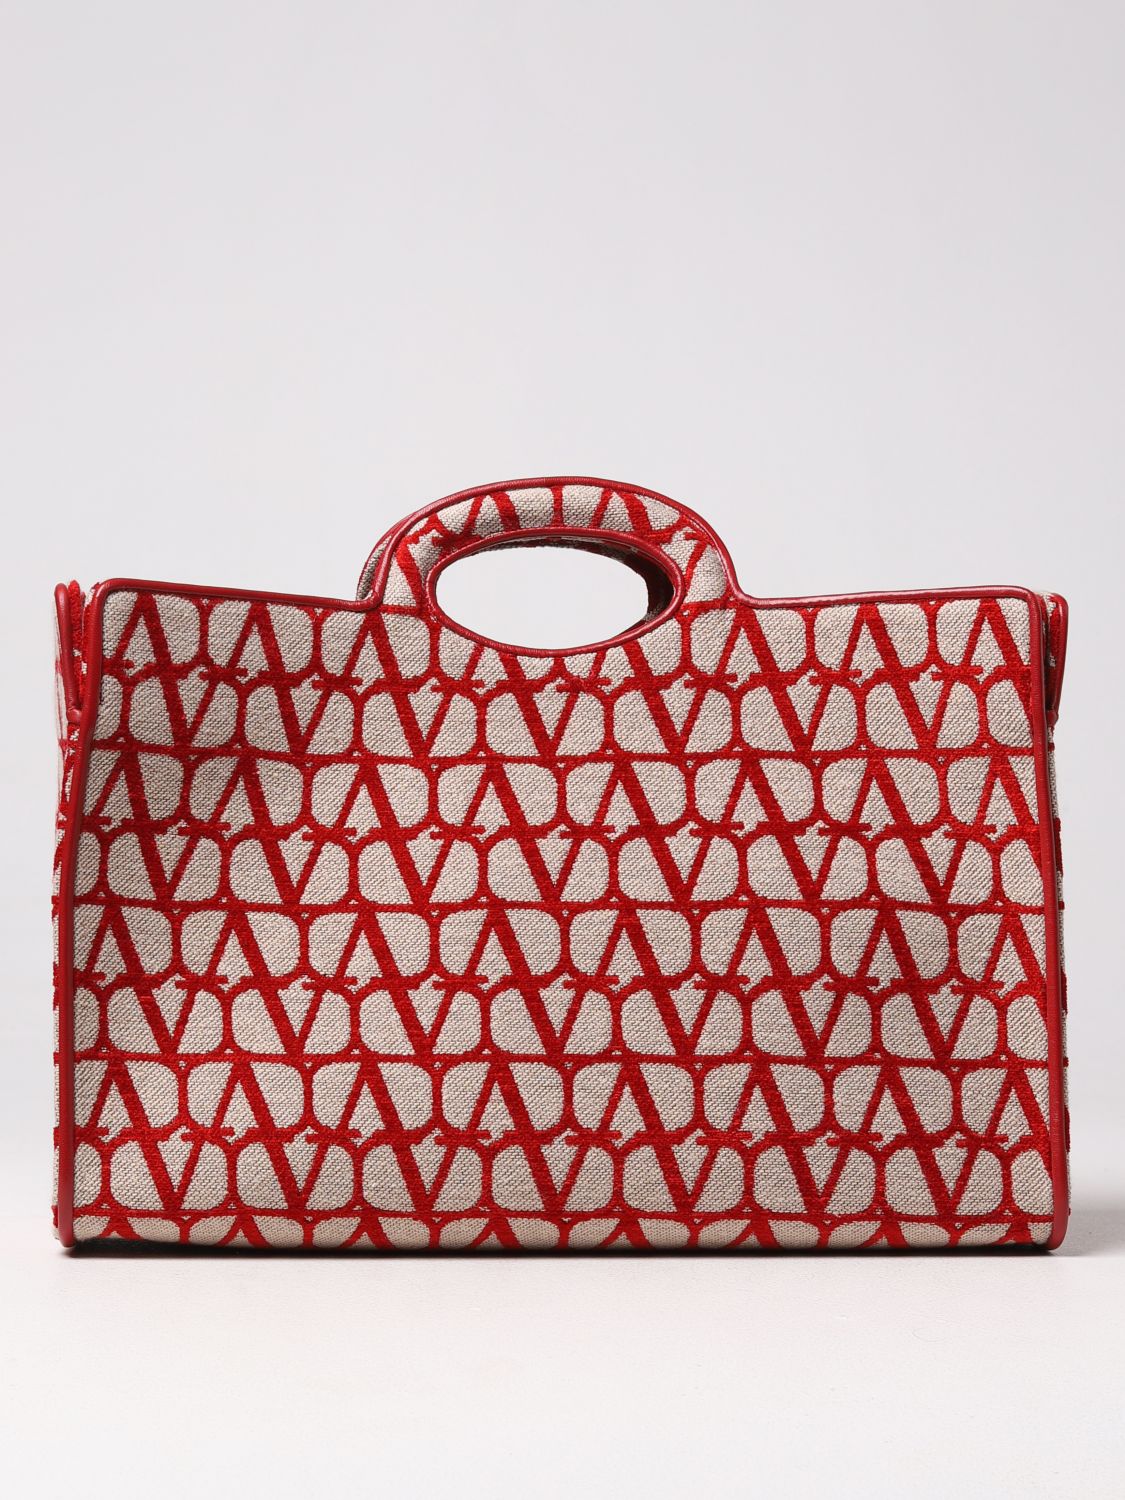 Valentino Garavani Tote Bags For Woman Red Valentino Garavani Tote Bags 2w2b0l29huj Online